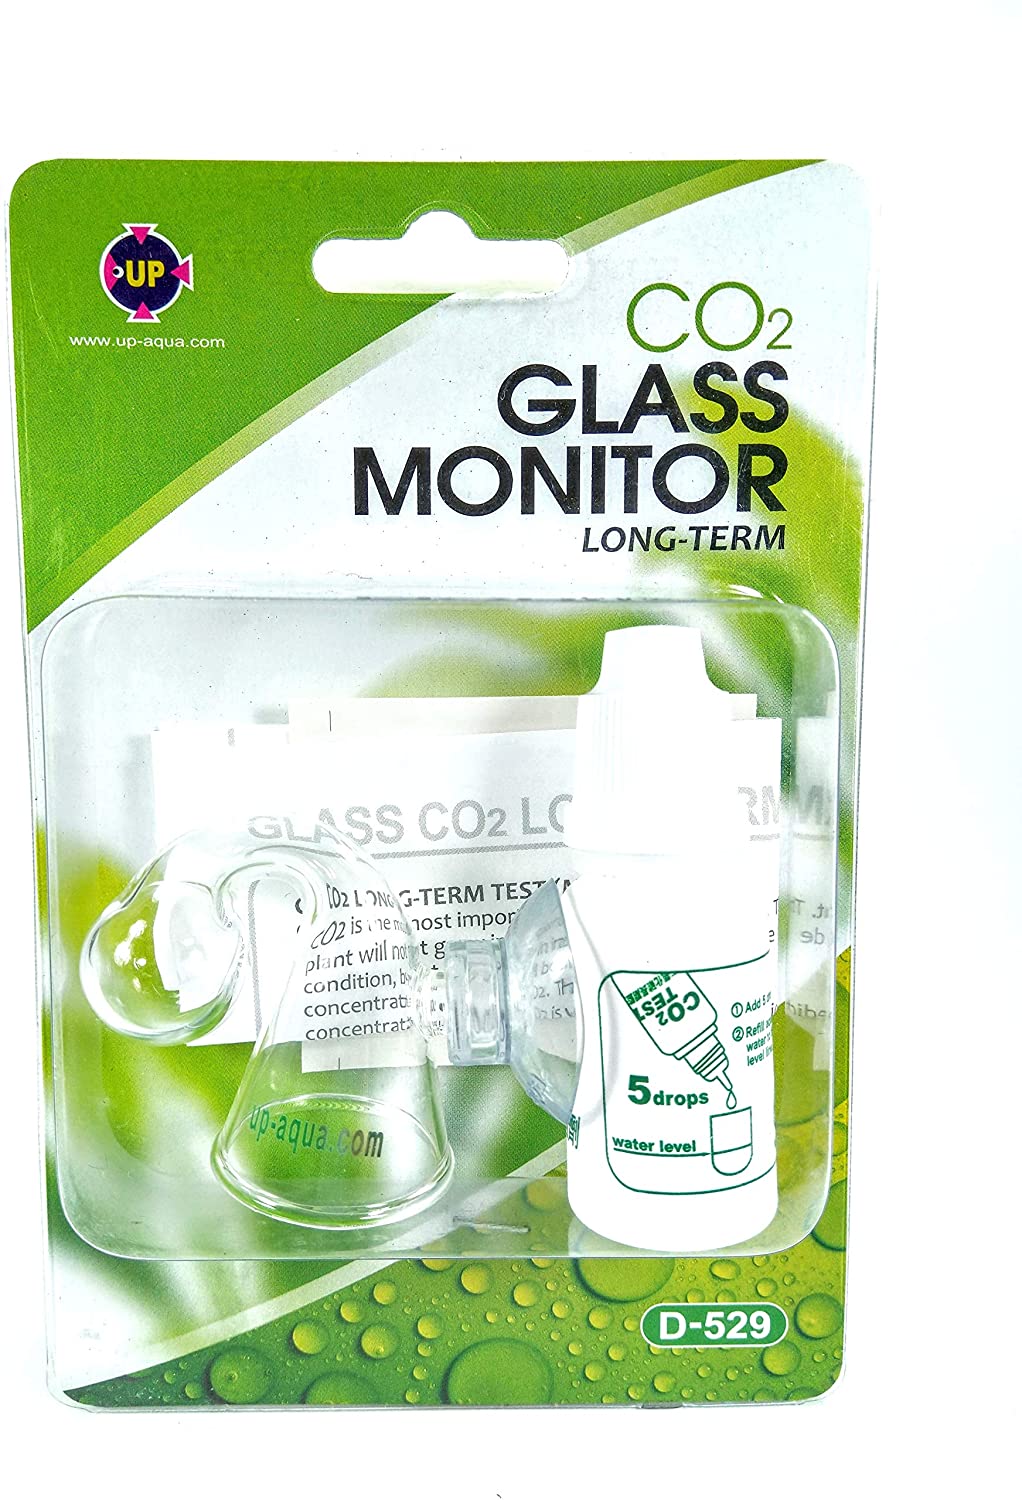 UP Aqua CO2 Glass monitor